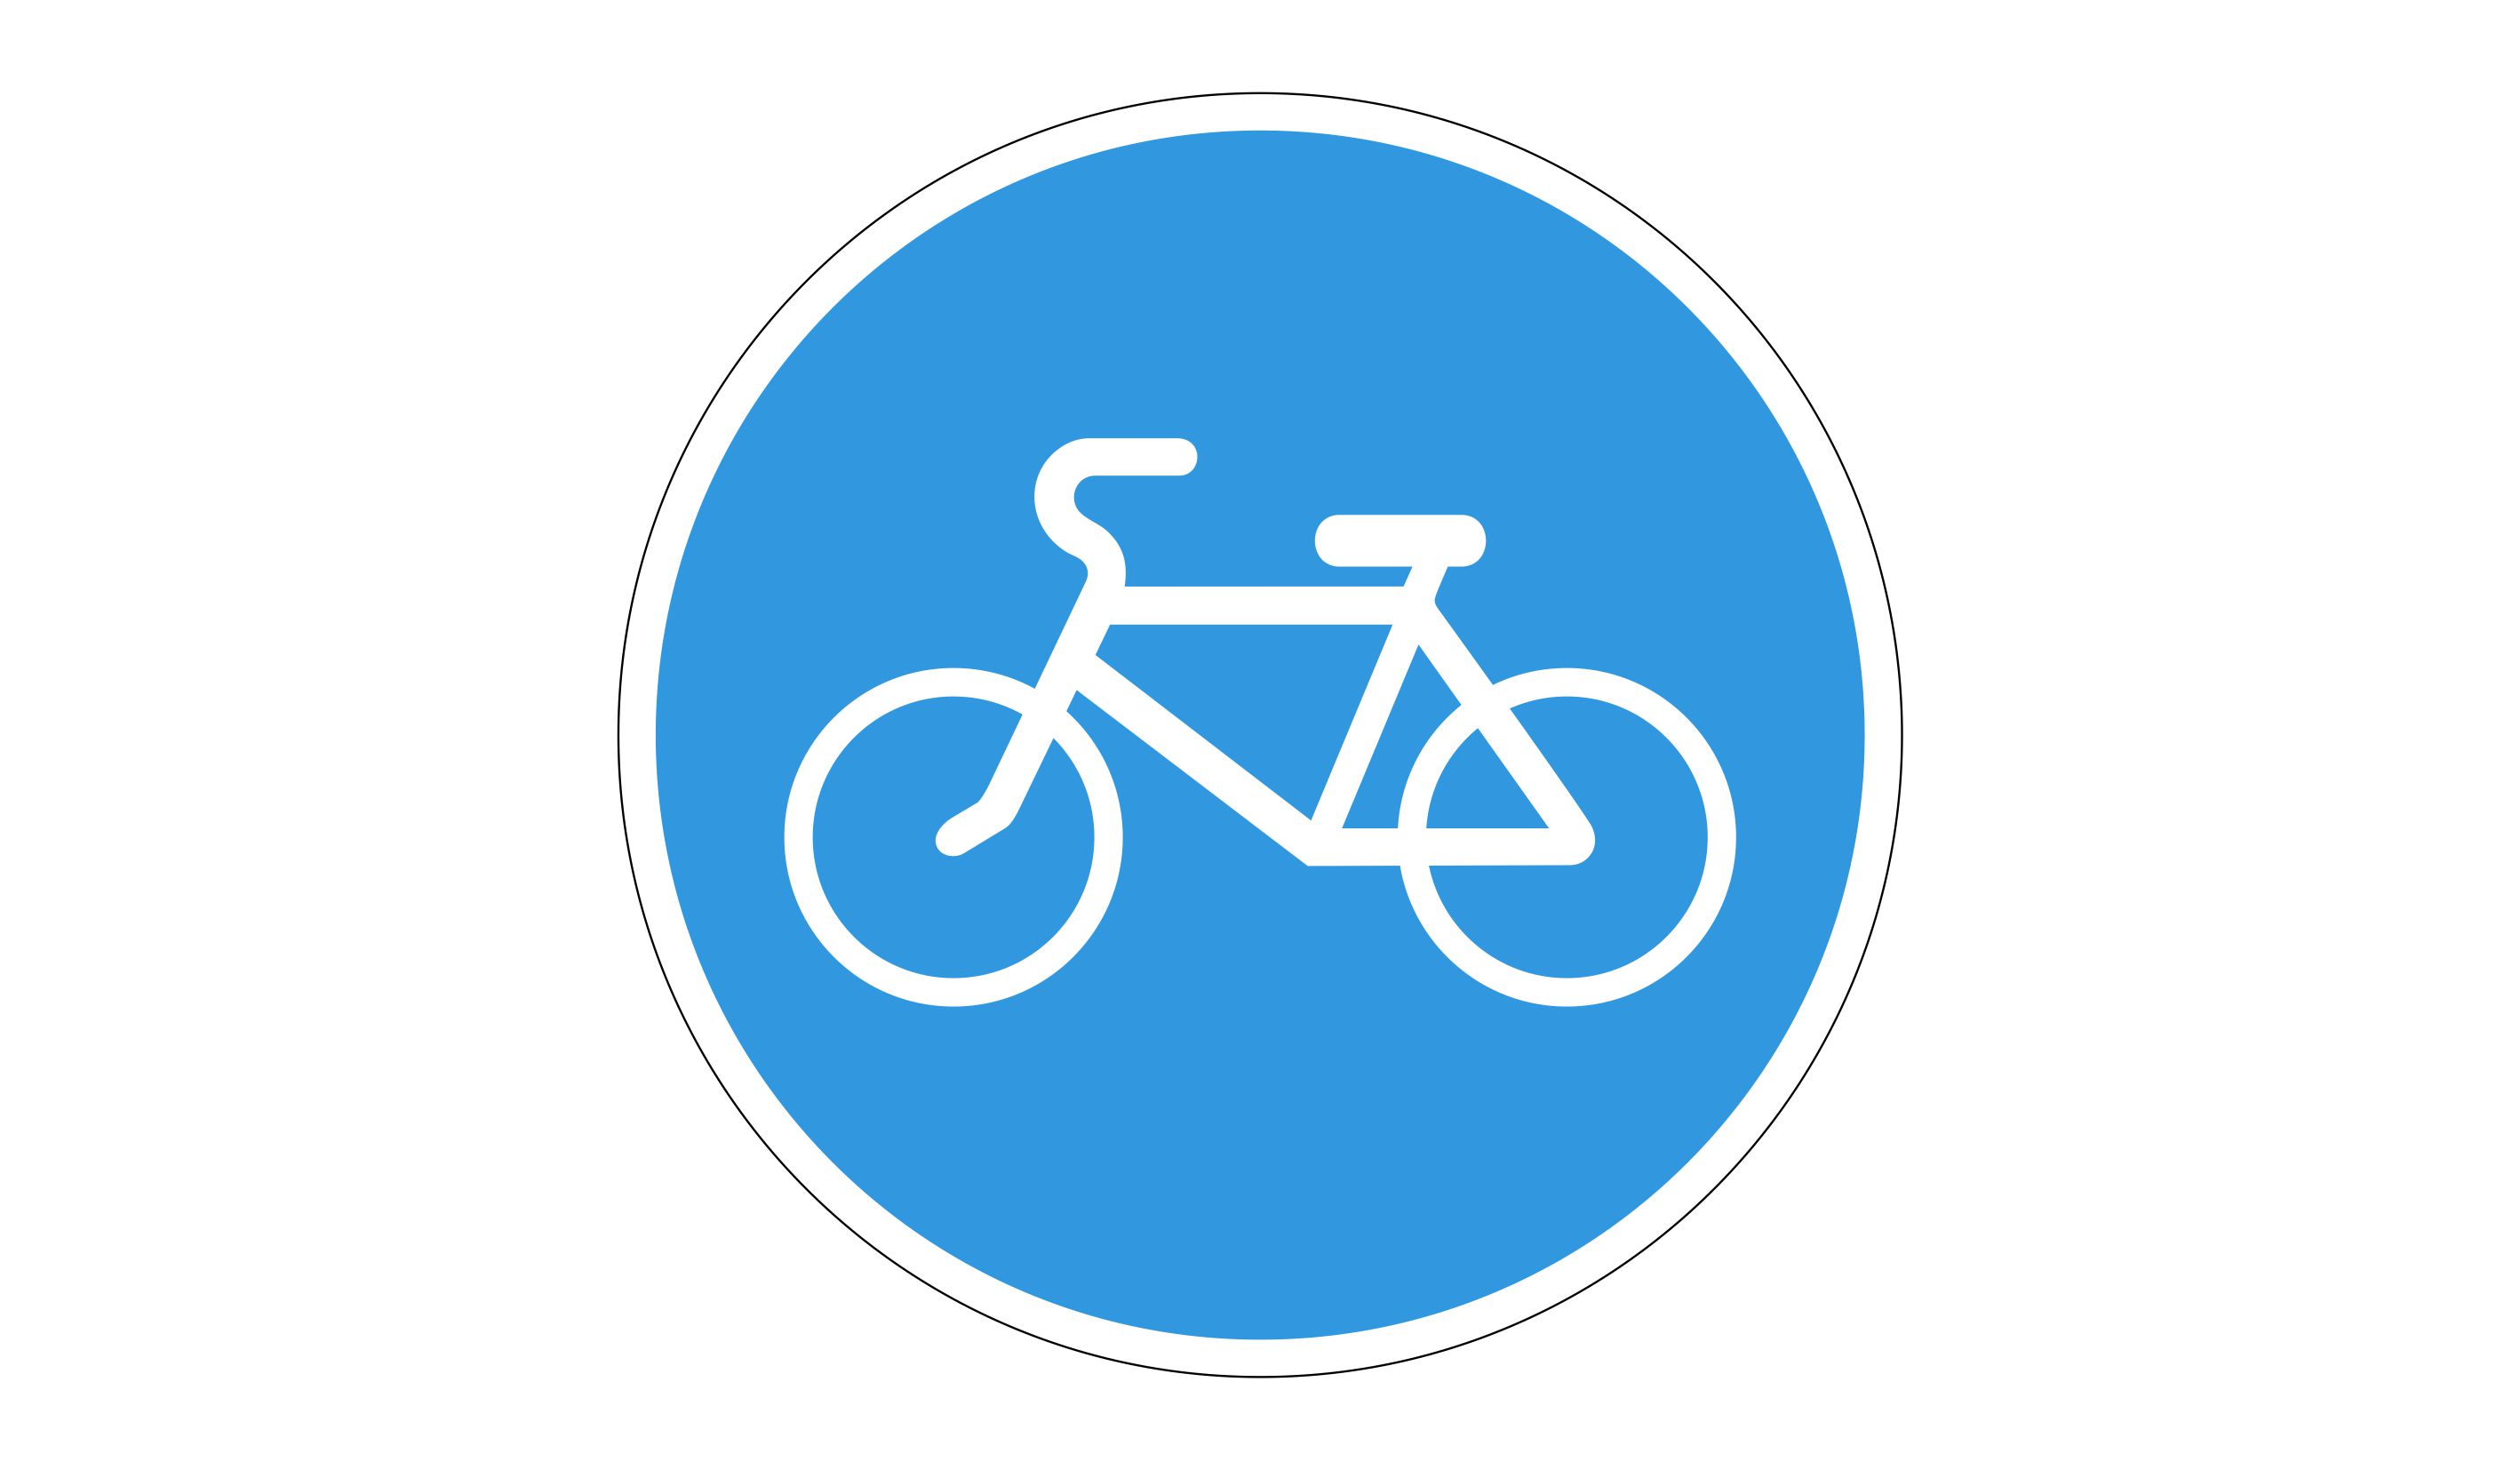 Ребенок велосипедная дорожка. Знак 4.4.1 велосипедная дорожка. Знаки дорожного движения велосипедная дорожка. Предписывающие знаки ПДД велосипедная дорожка. Дорожный знак велодорожка.